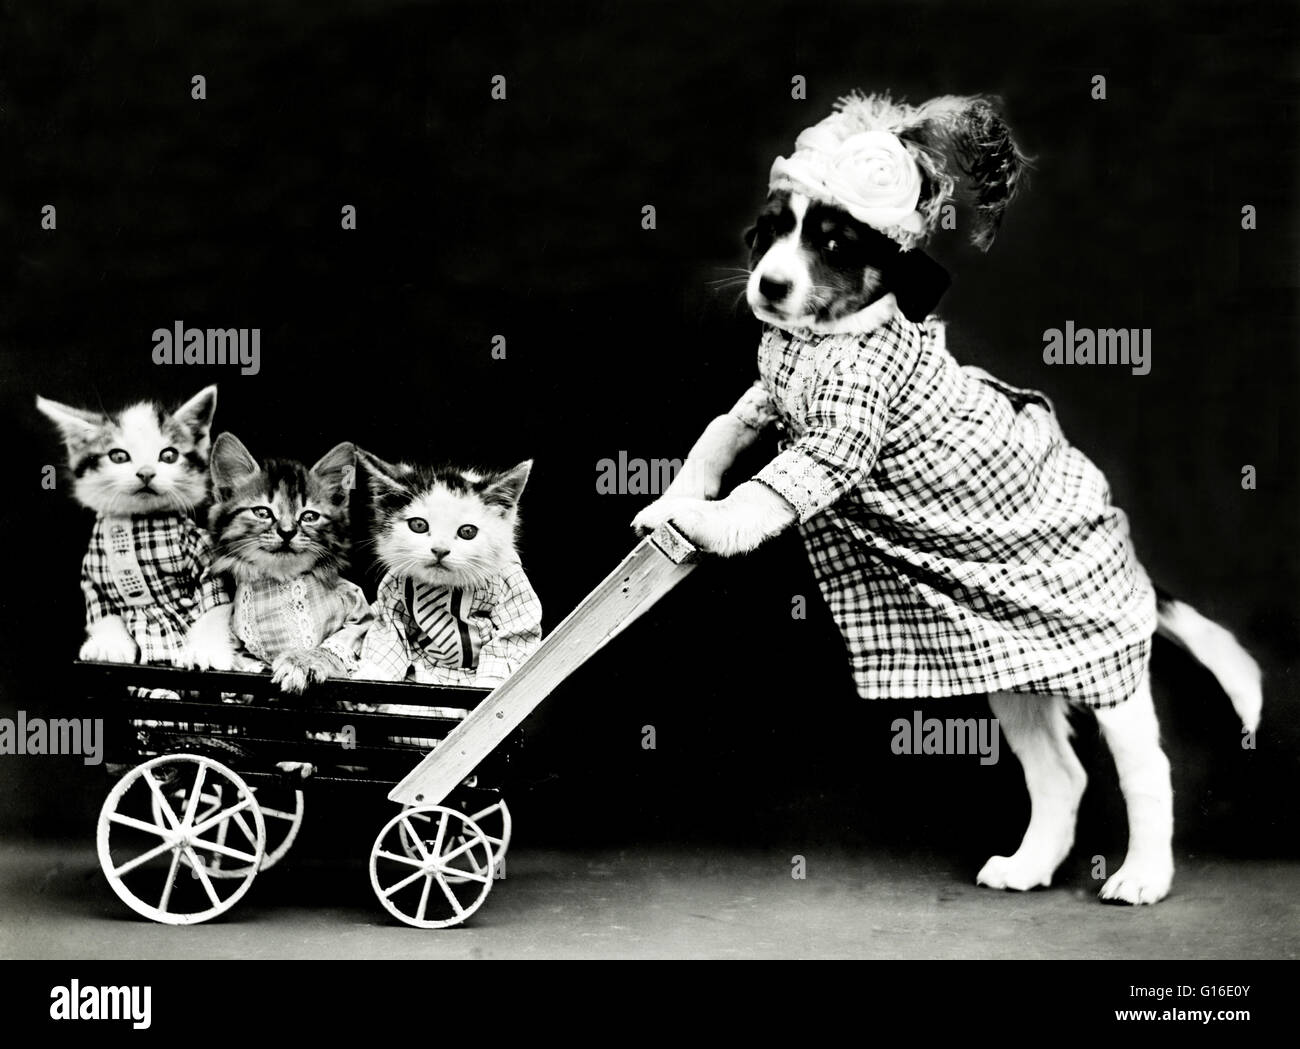 Titel: "Der Ausflug" zeigt einen Welpen trägt ein Kleid und drei Kätzchen in einen Wagen oder Kinderwagen schieben. Harry Whittier befreit (1879-1953) war ein US-amerikanischer Fotograf, der lebende Tiere gekleidet und posierte in menschlichen Situationen mit Requisiten fotografiert. Seine anim Stockfoto